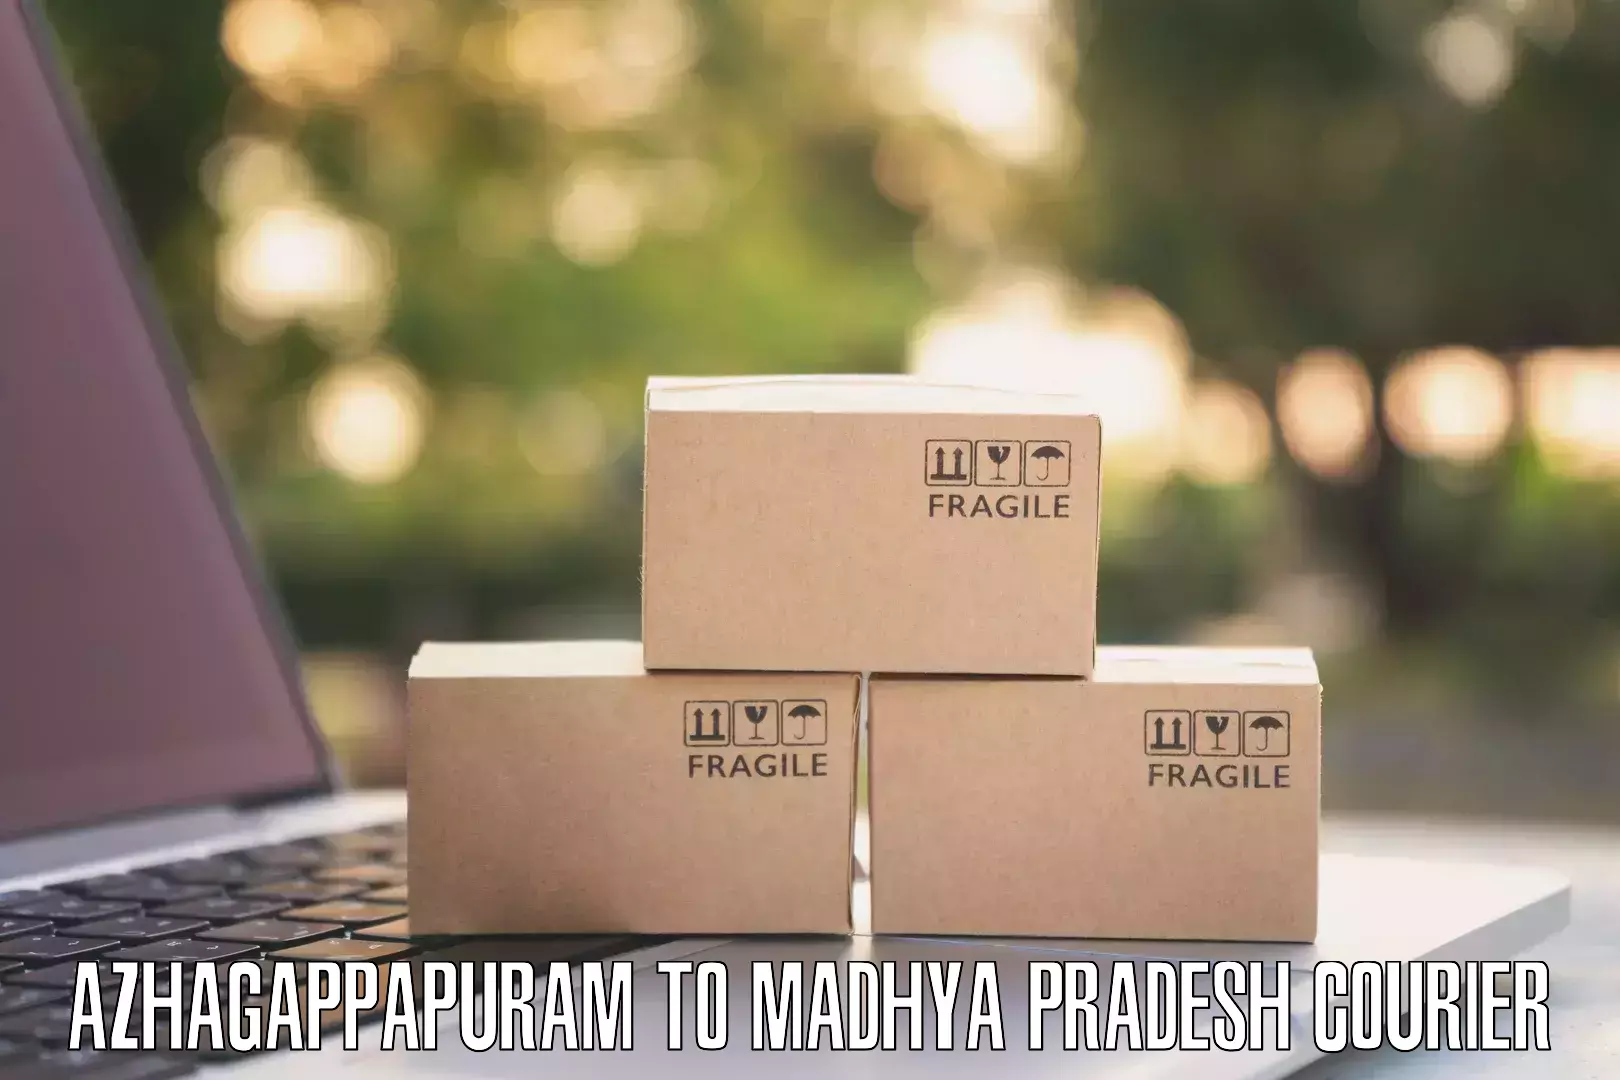 Smart courier technologies Azhagappapuram to Madhya Pradesh